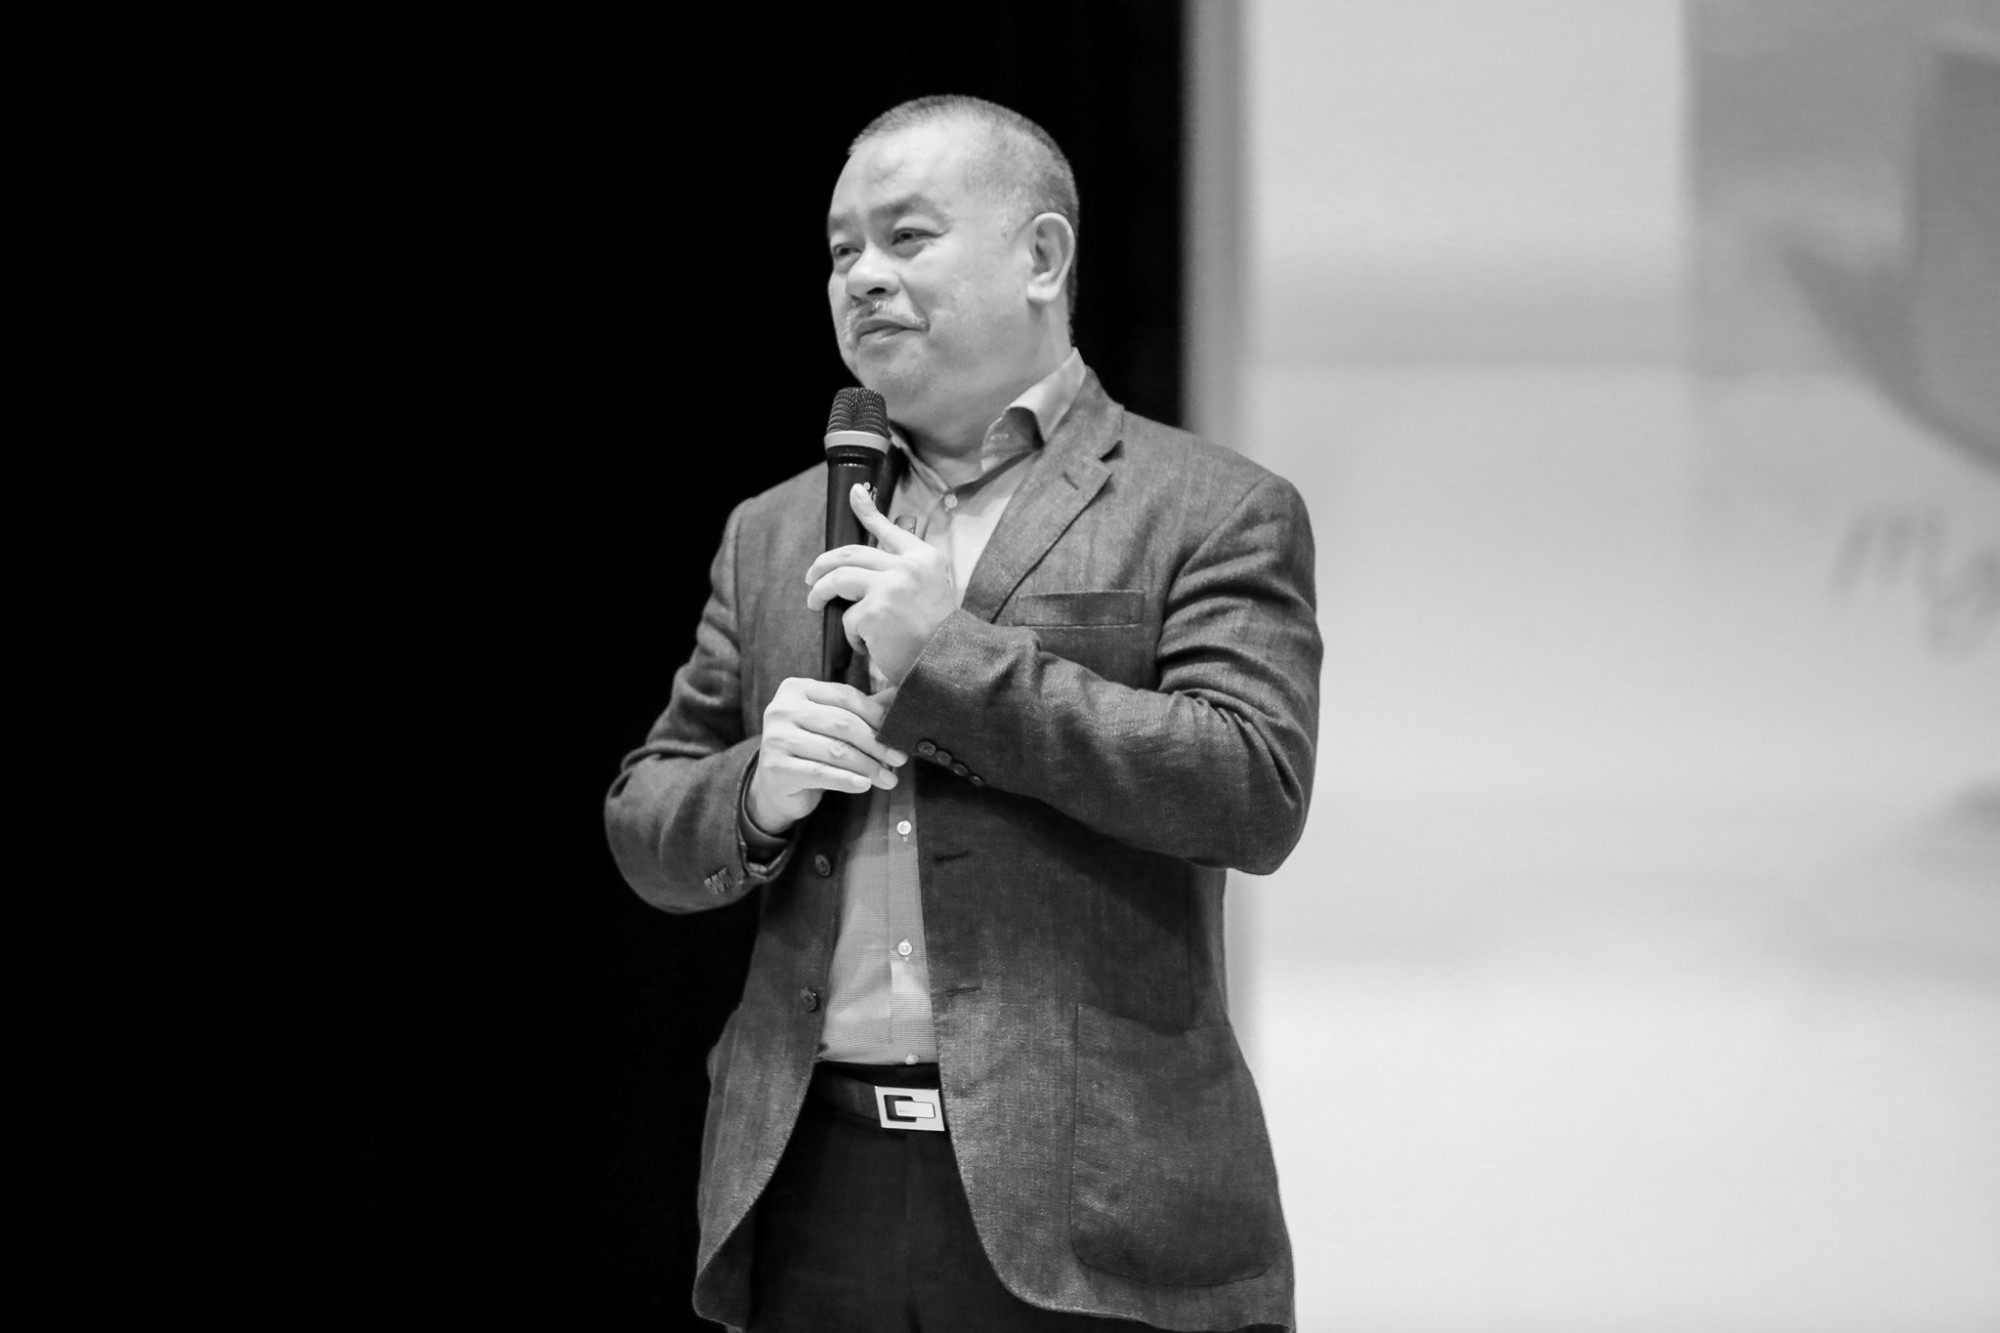 Hình ảnh của Thầy Trần Đình Dũng trong chương trình Bài giảng đầu năm, tại Hội trường Trịnh Công Sơn, tháng 9/2019.